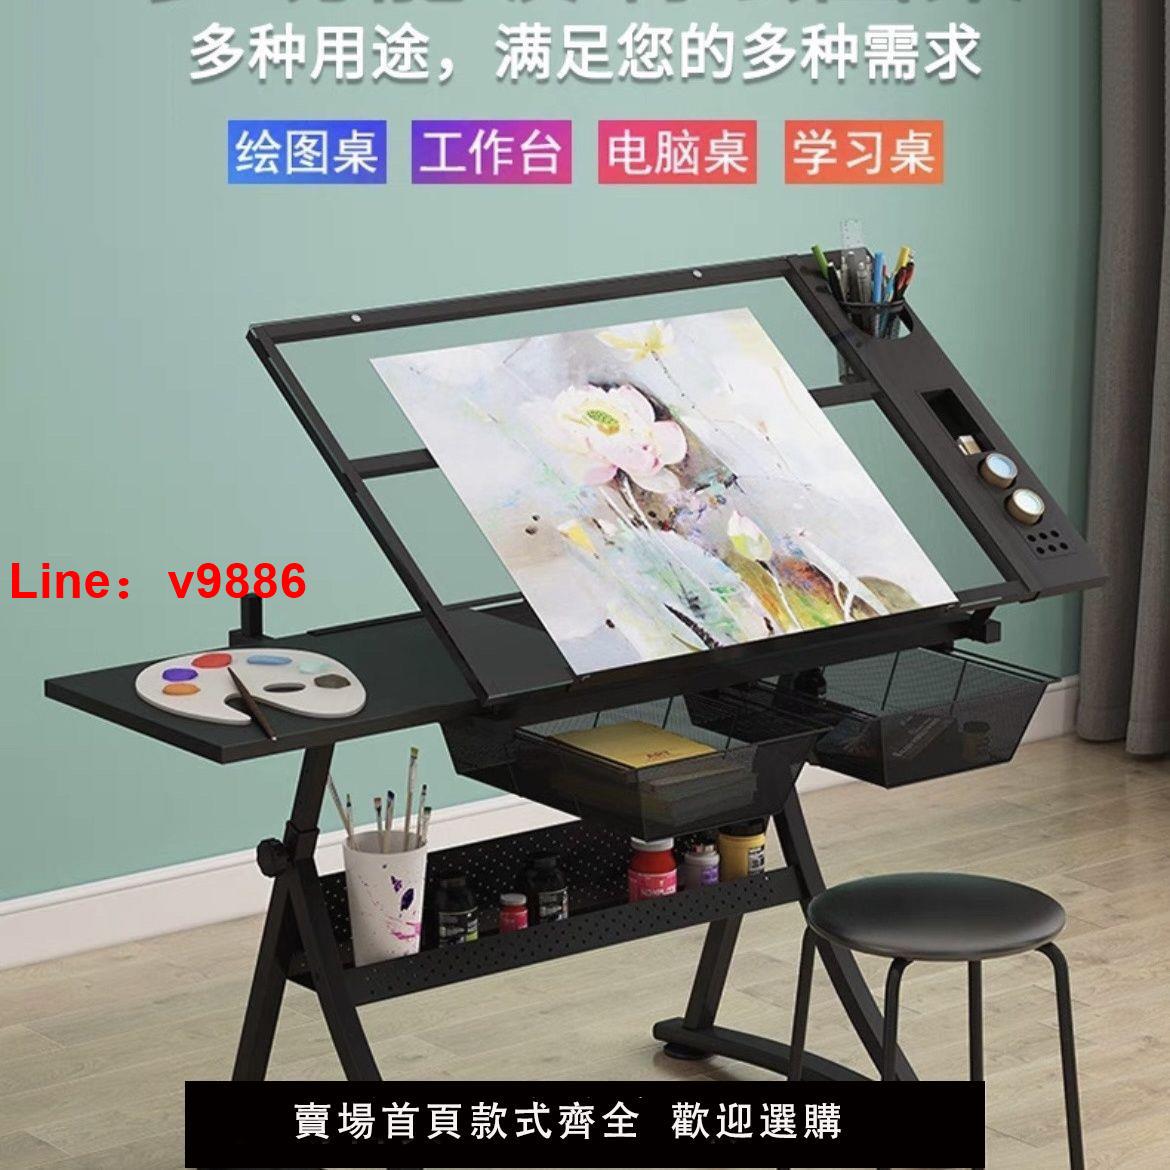 【台灣公司保固】繪圖桌繪畫可升降桌美術玻璃畫畫制圖電腦設計師書桌工作臺桌子